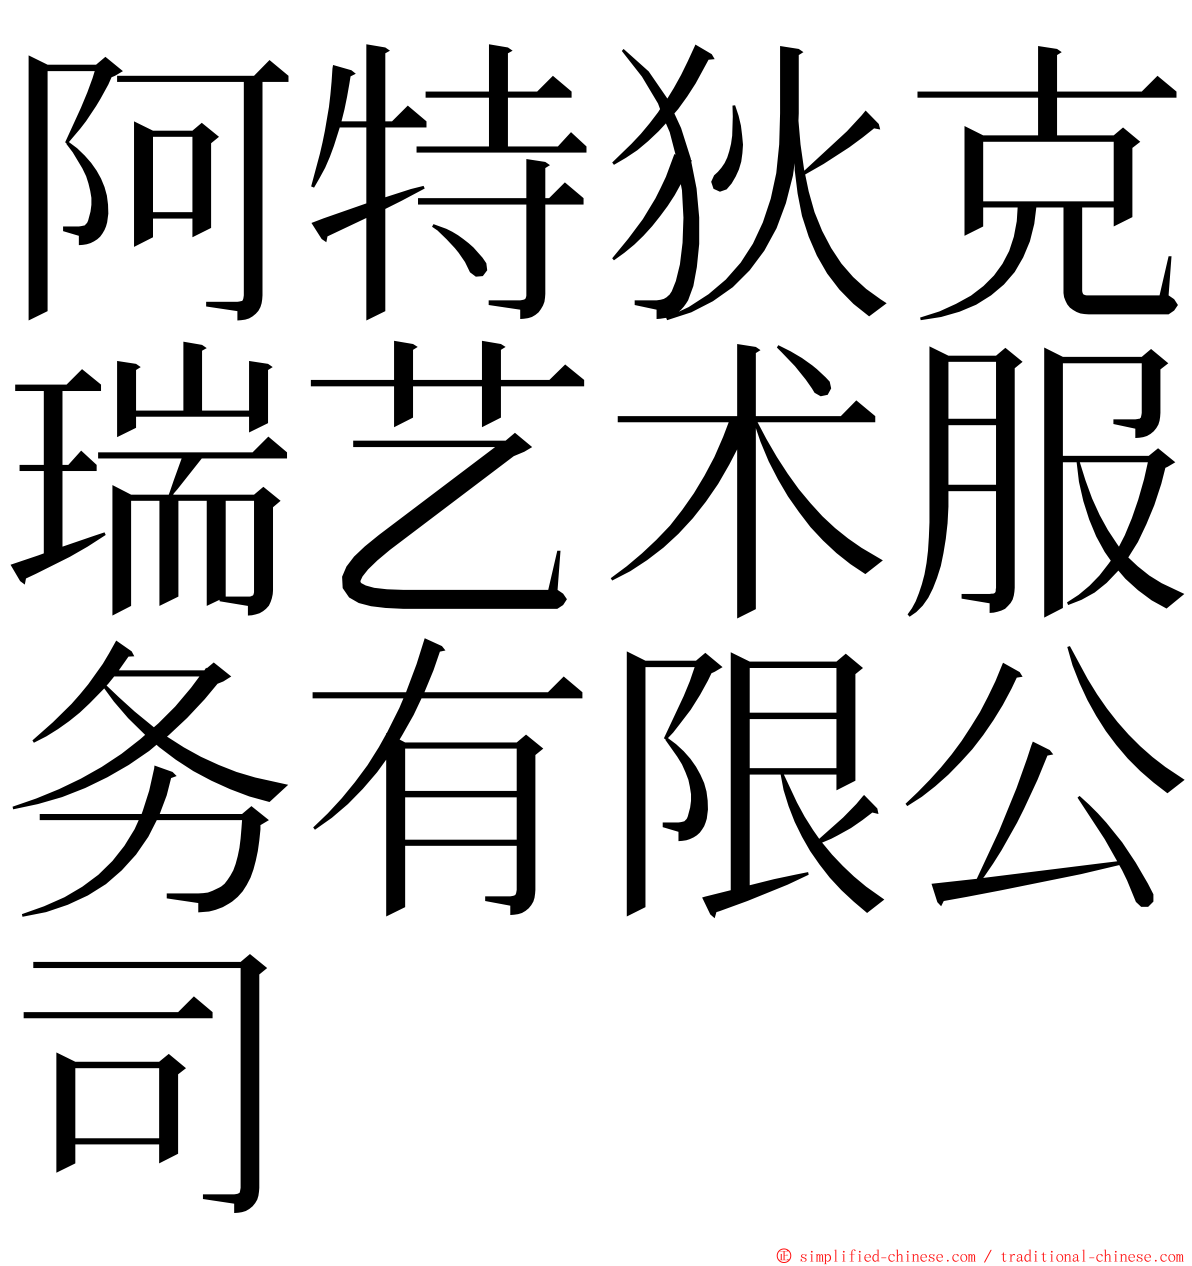 阿特狄克瑞艺术服务有限公司 ming font